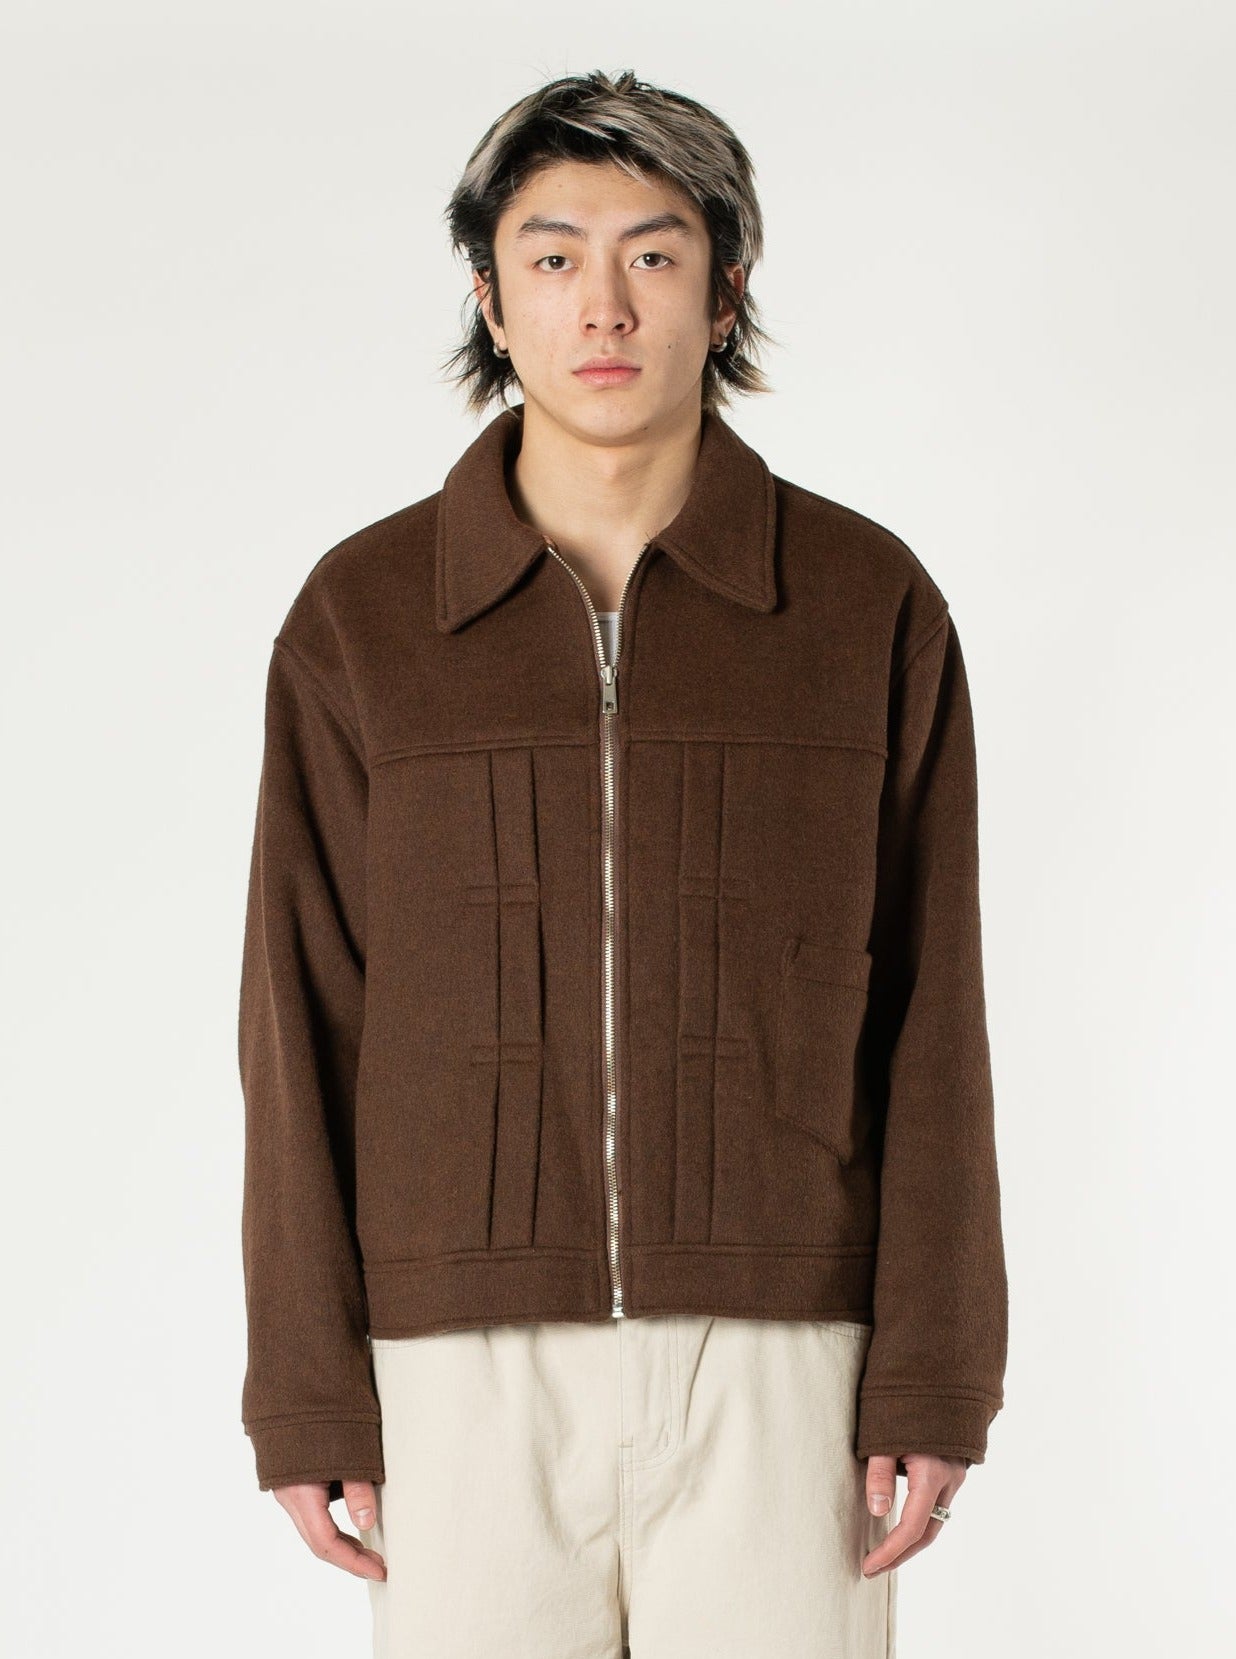 Pleated Wool Jacket